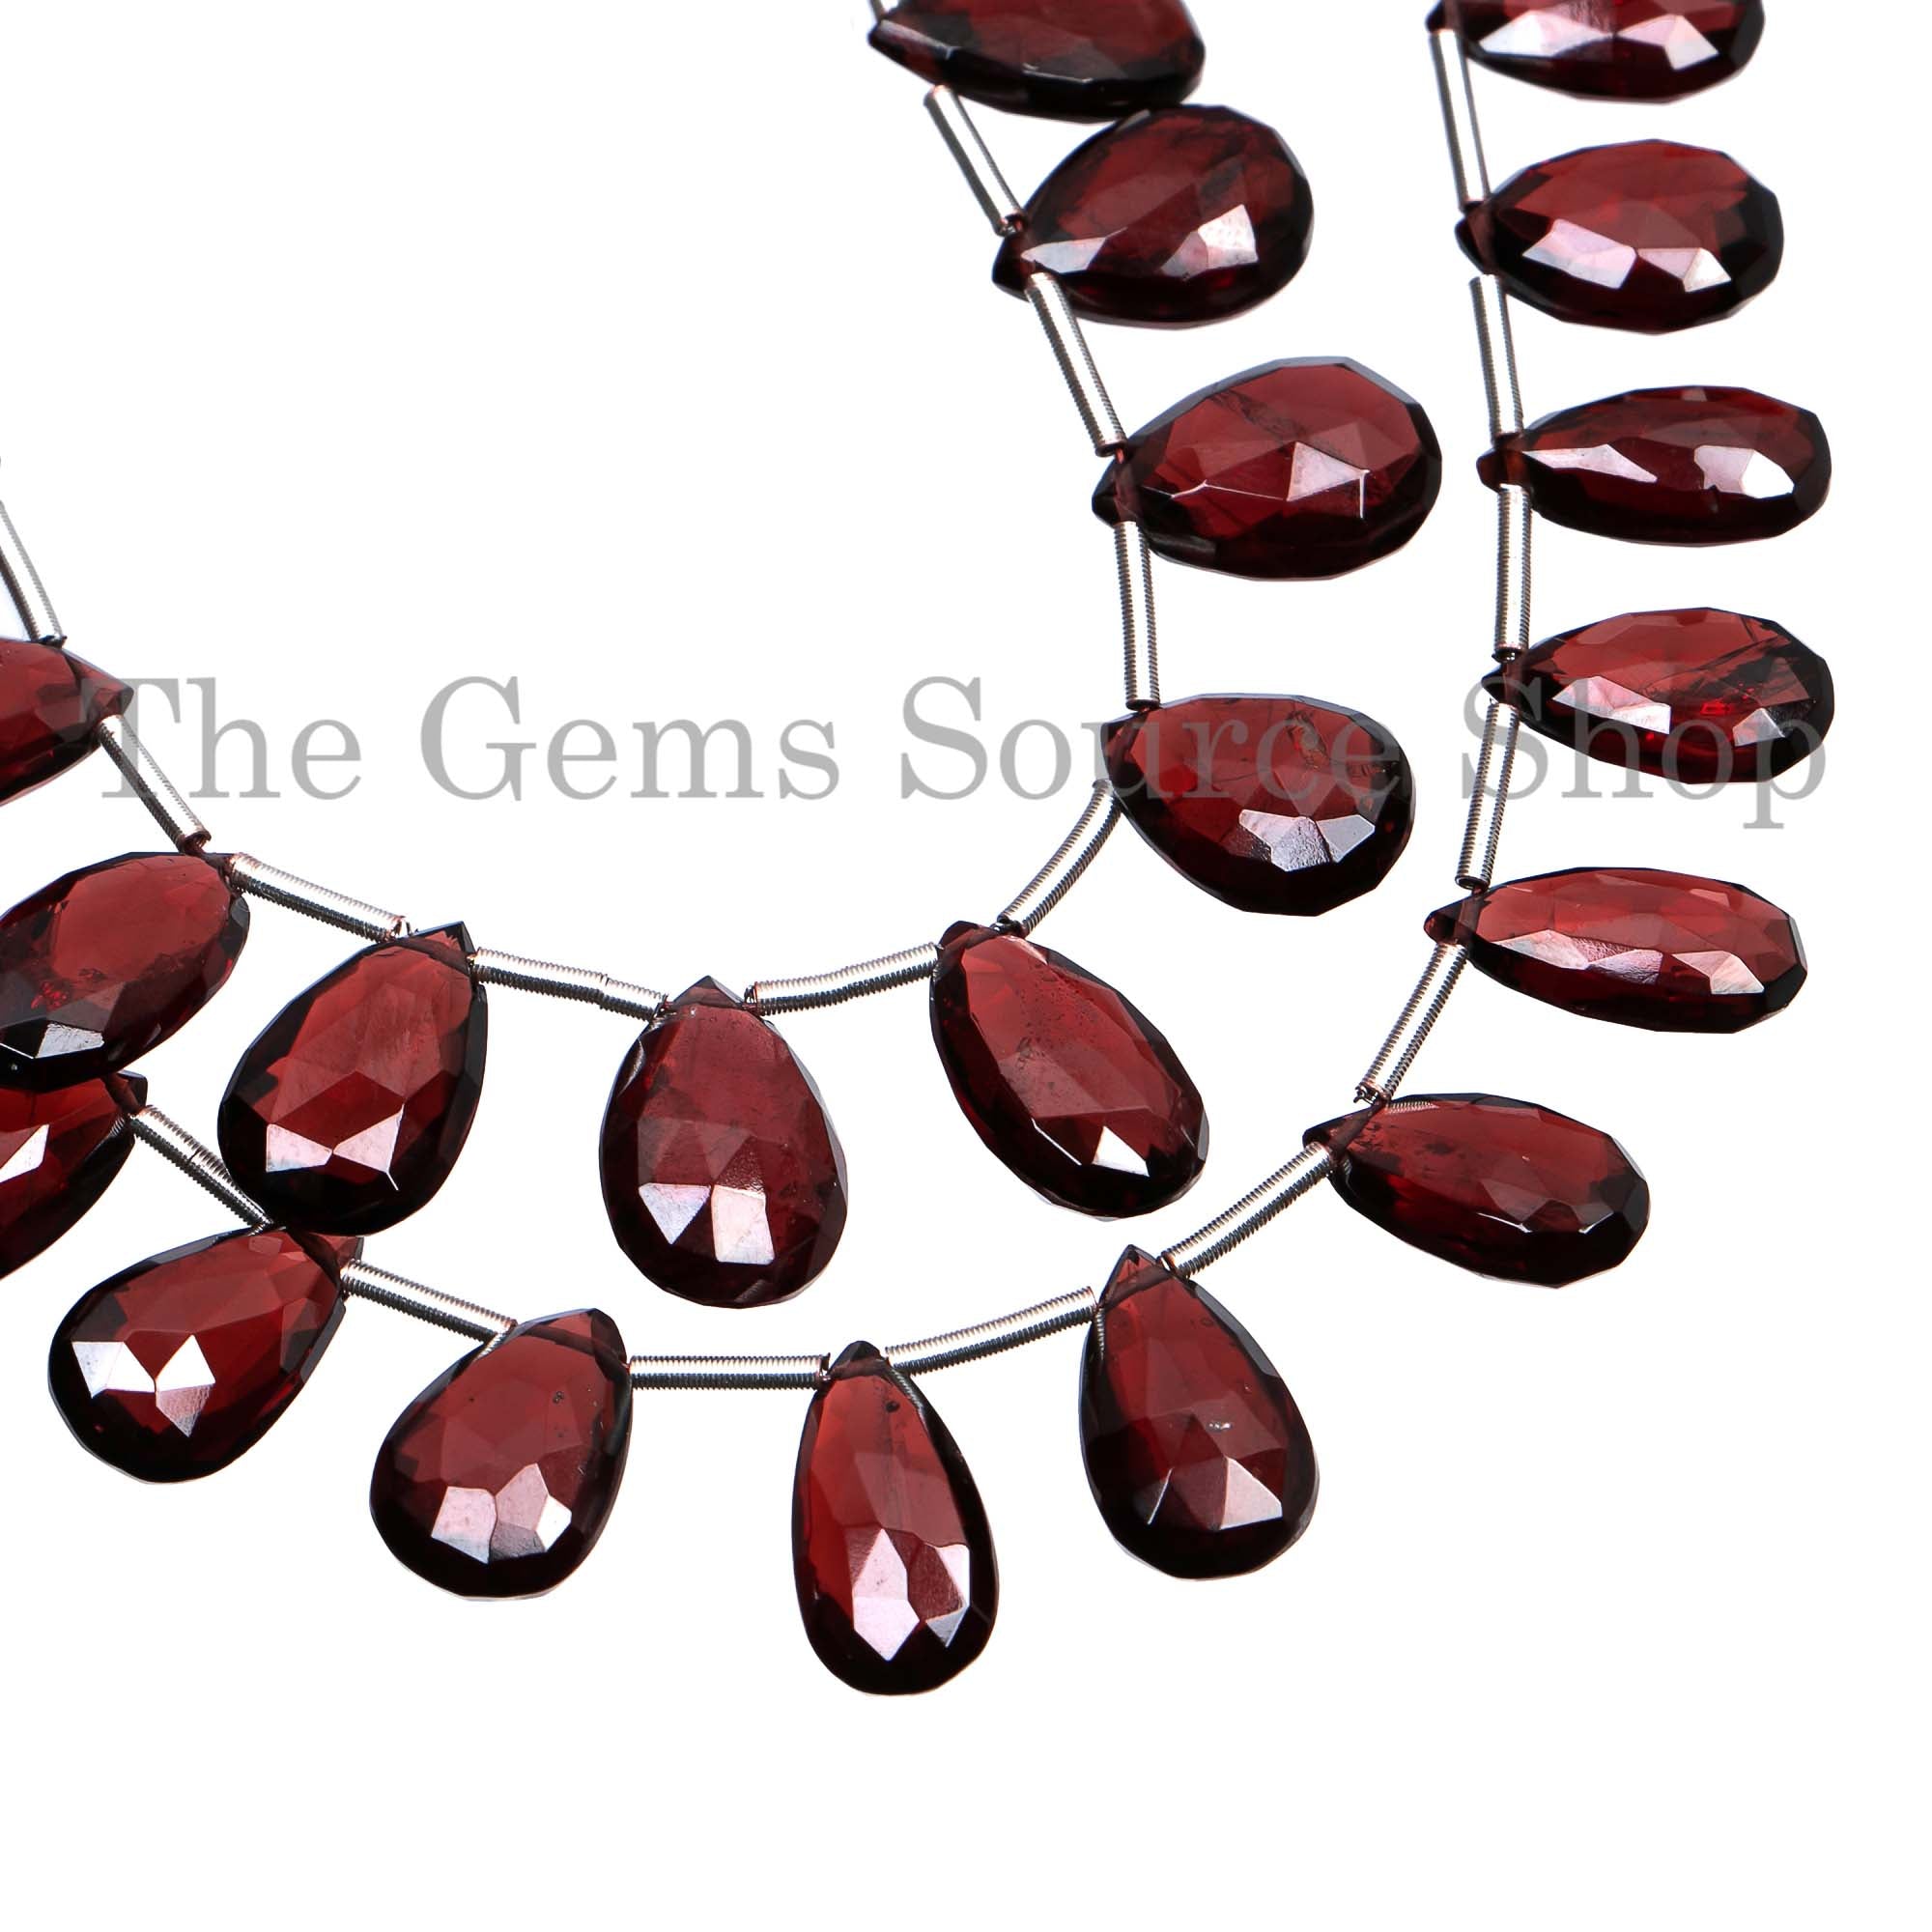 Mozambique Garnet Beads, Garnet Faceted Beads, Garnet Pear Shape Beads, Garnet Gemstone